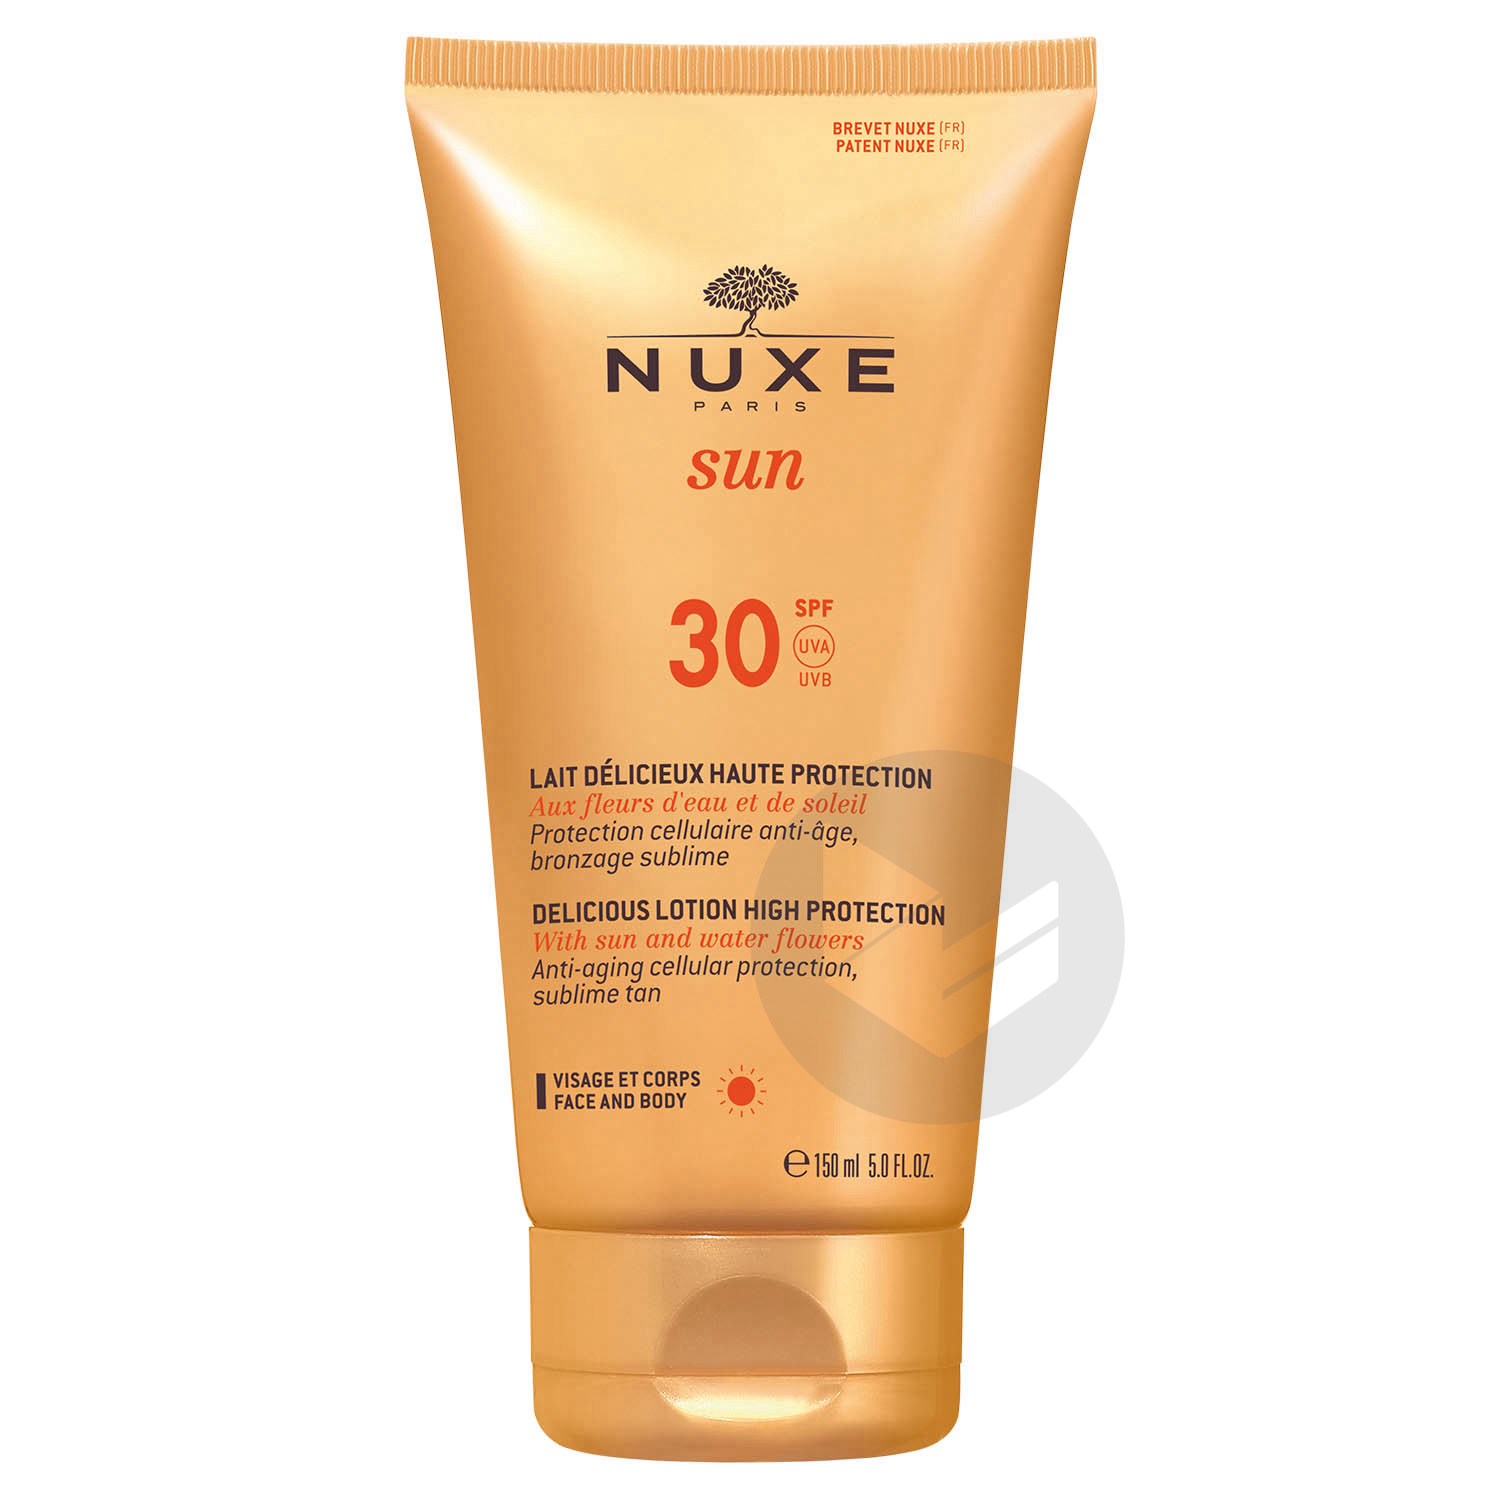 Lait Délicieux Haute Protection SPF30 Nuxe Sun